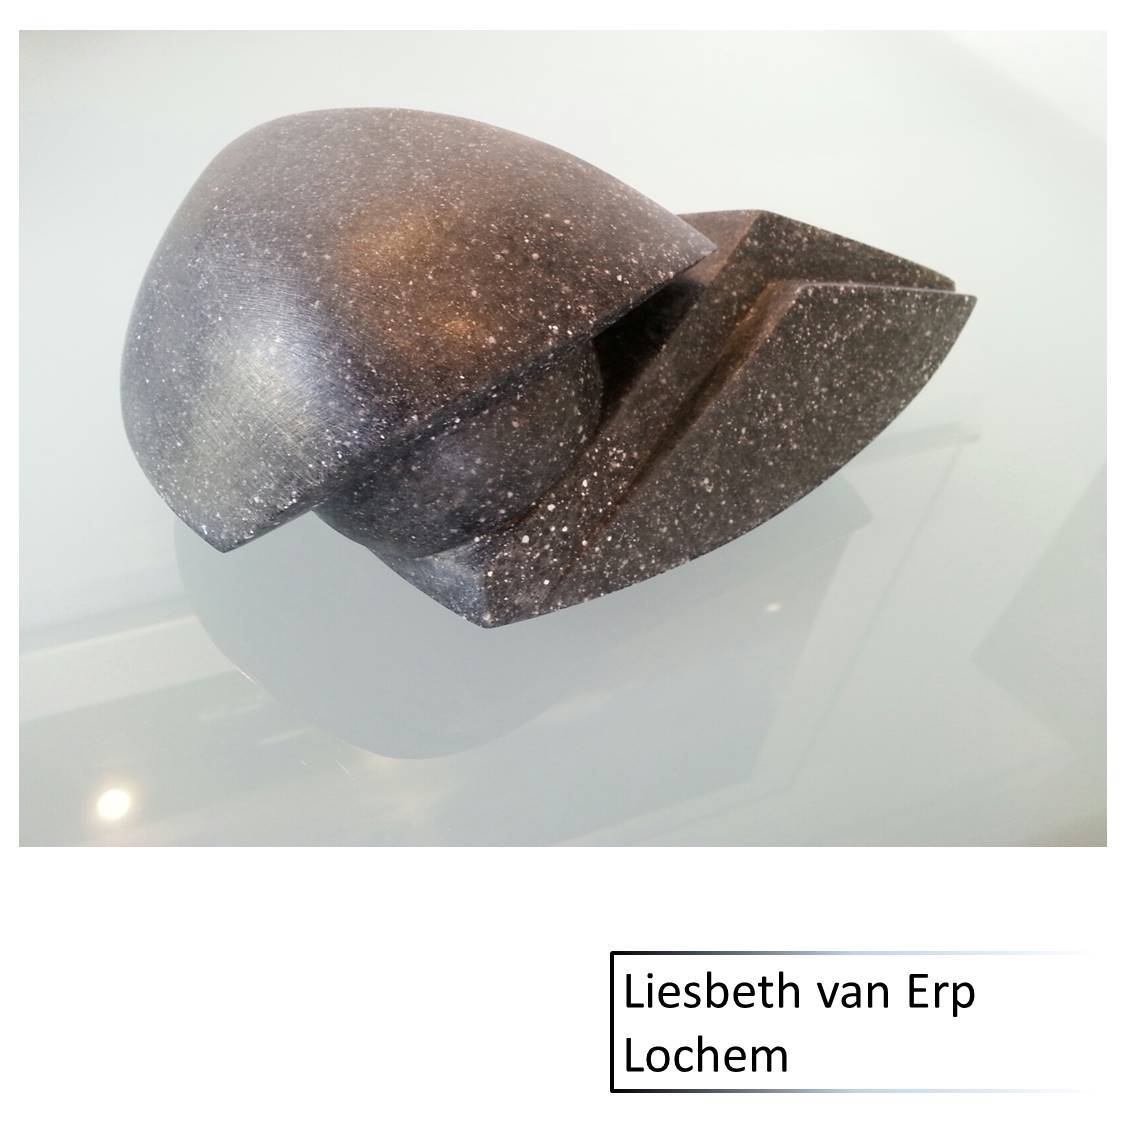 Liesbeth van Erp